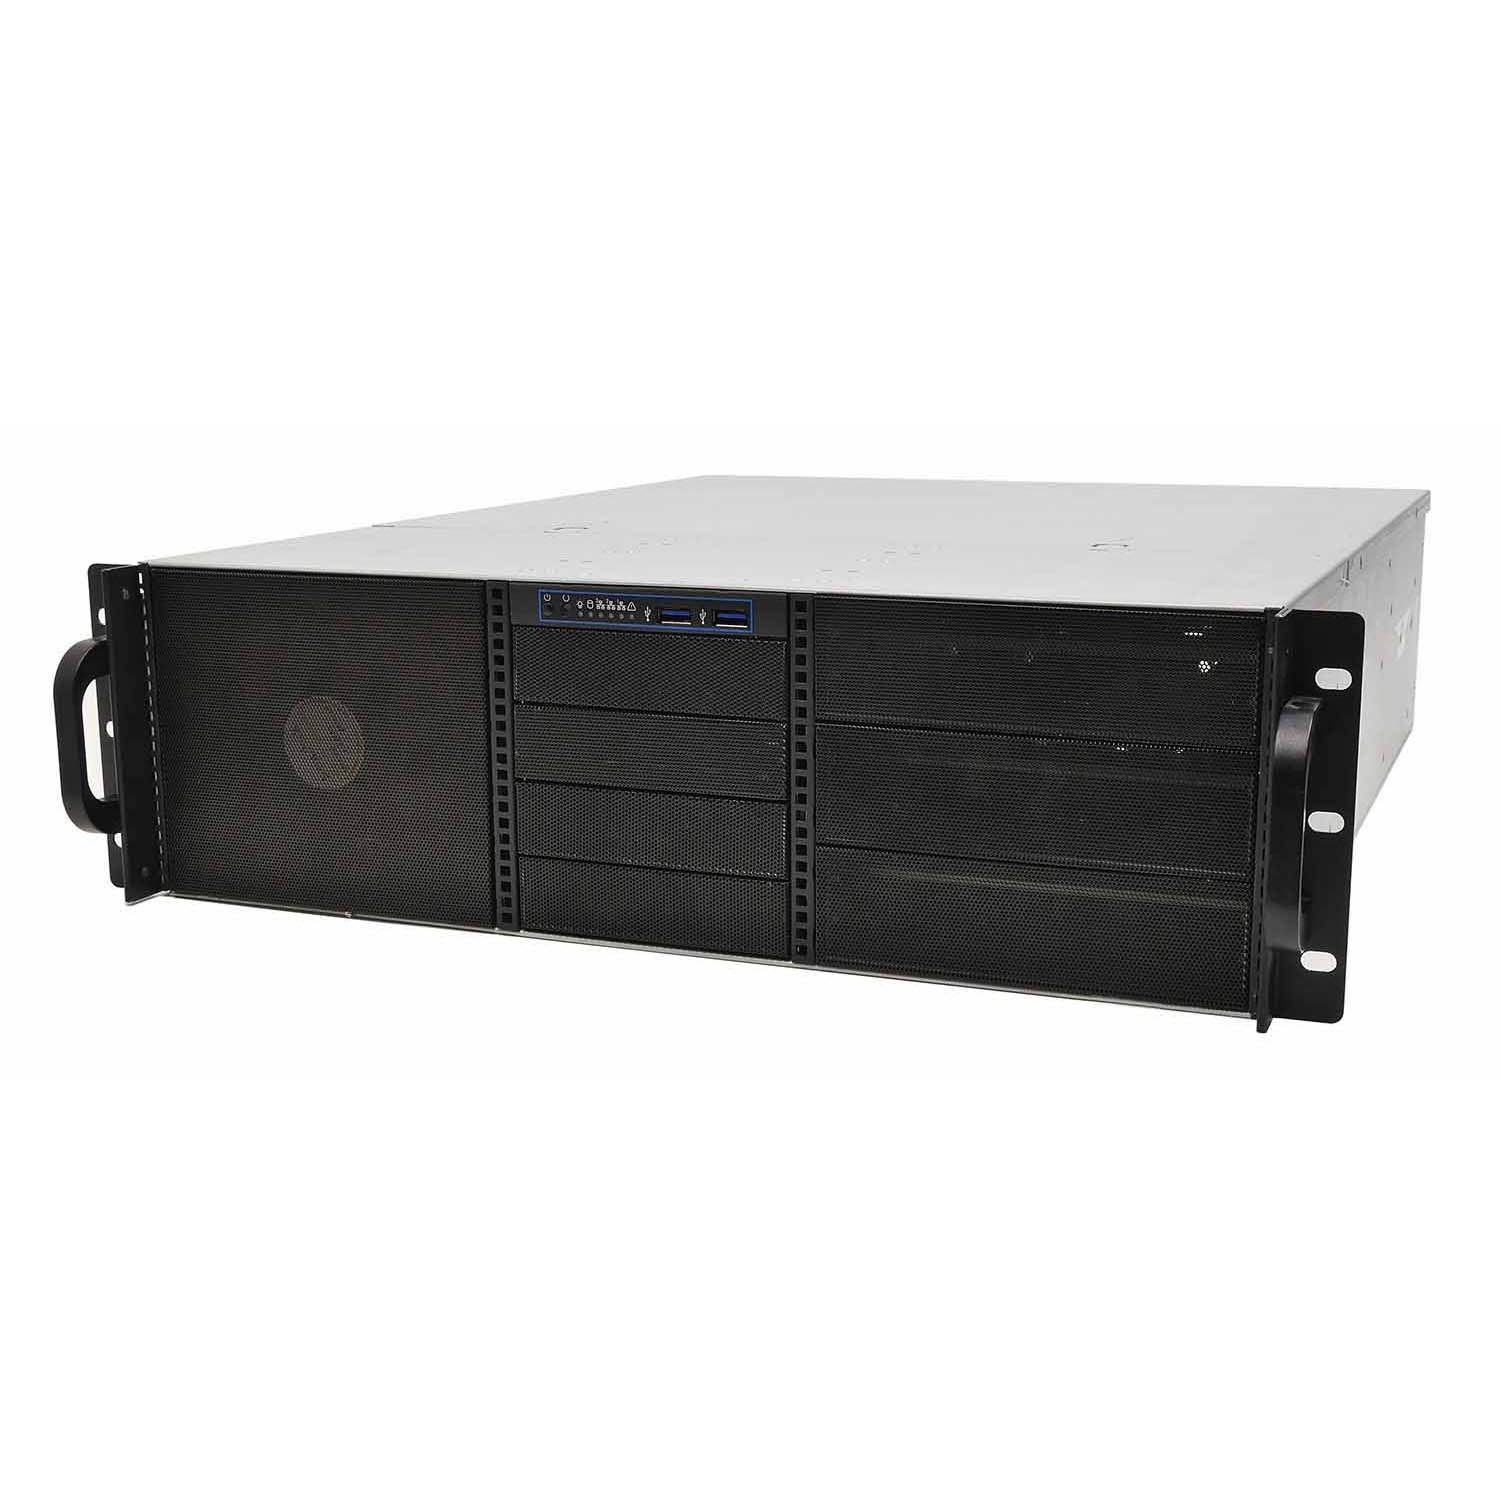 Серверный корпус 3U NR-N3415 (ATX 12x13, 6x5.25ext (10x3.5int), 4x3.5ext, 480мм)черный,NegoRack